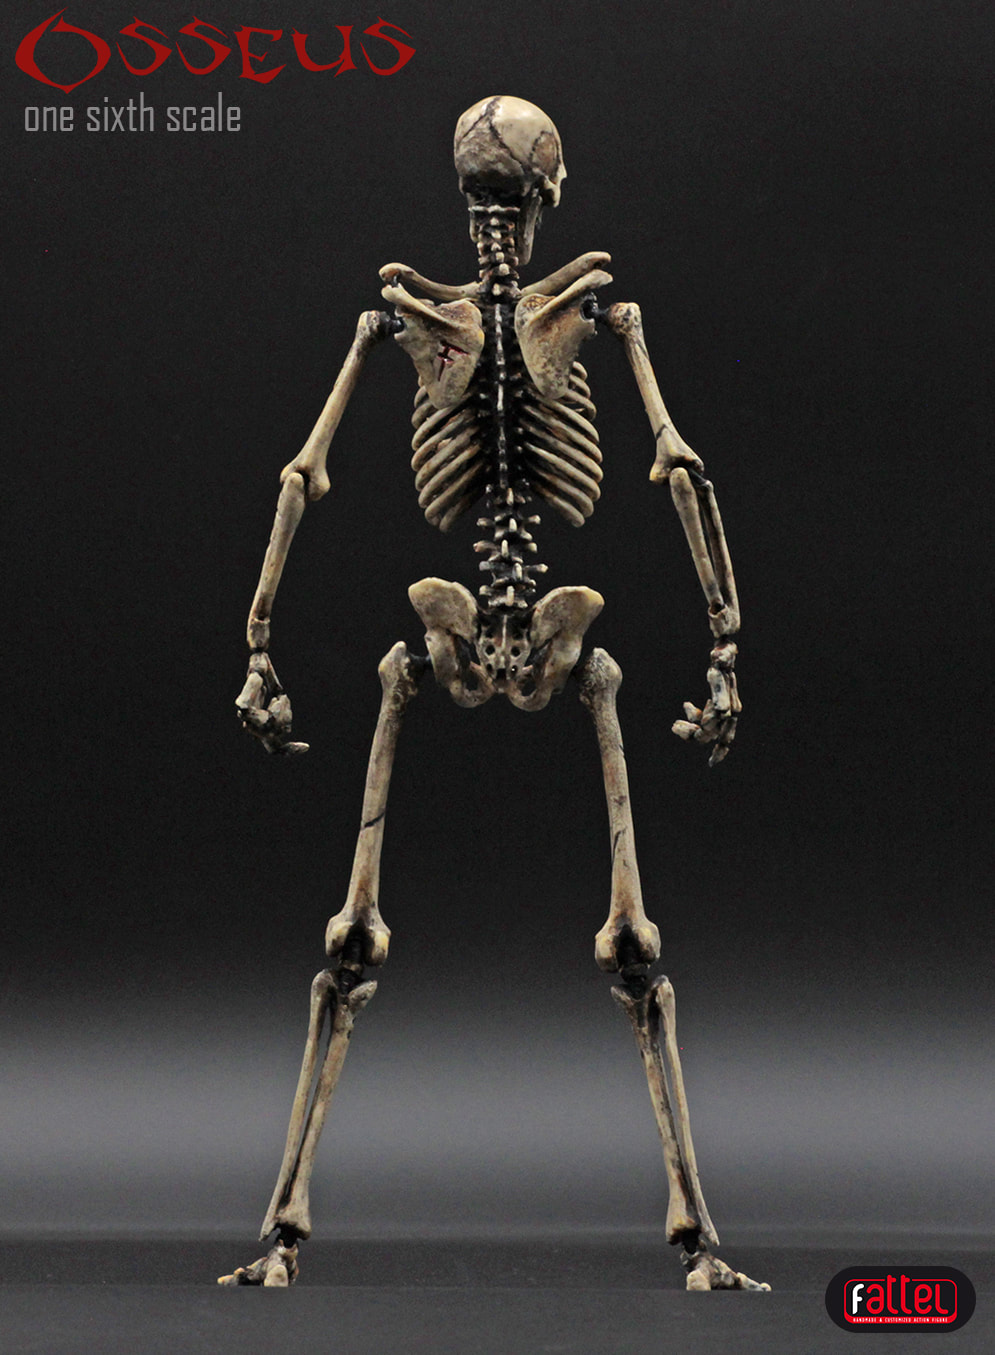 skeleton toy figures